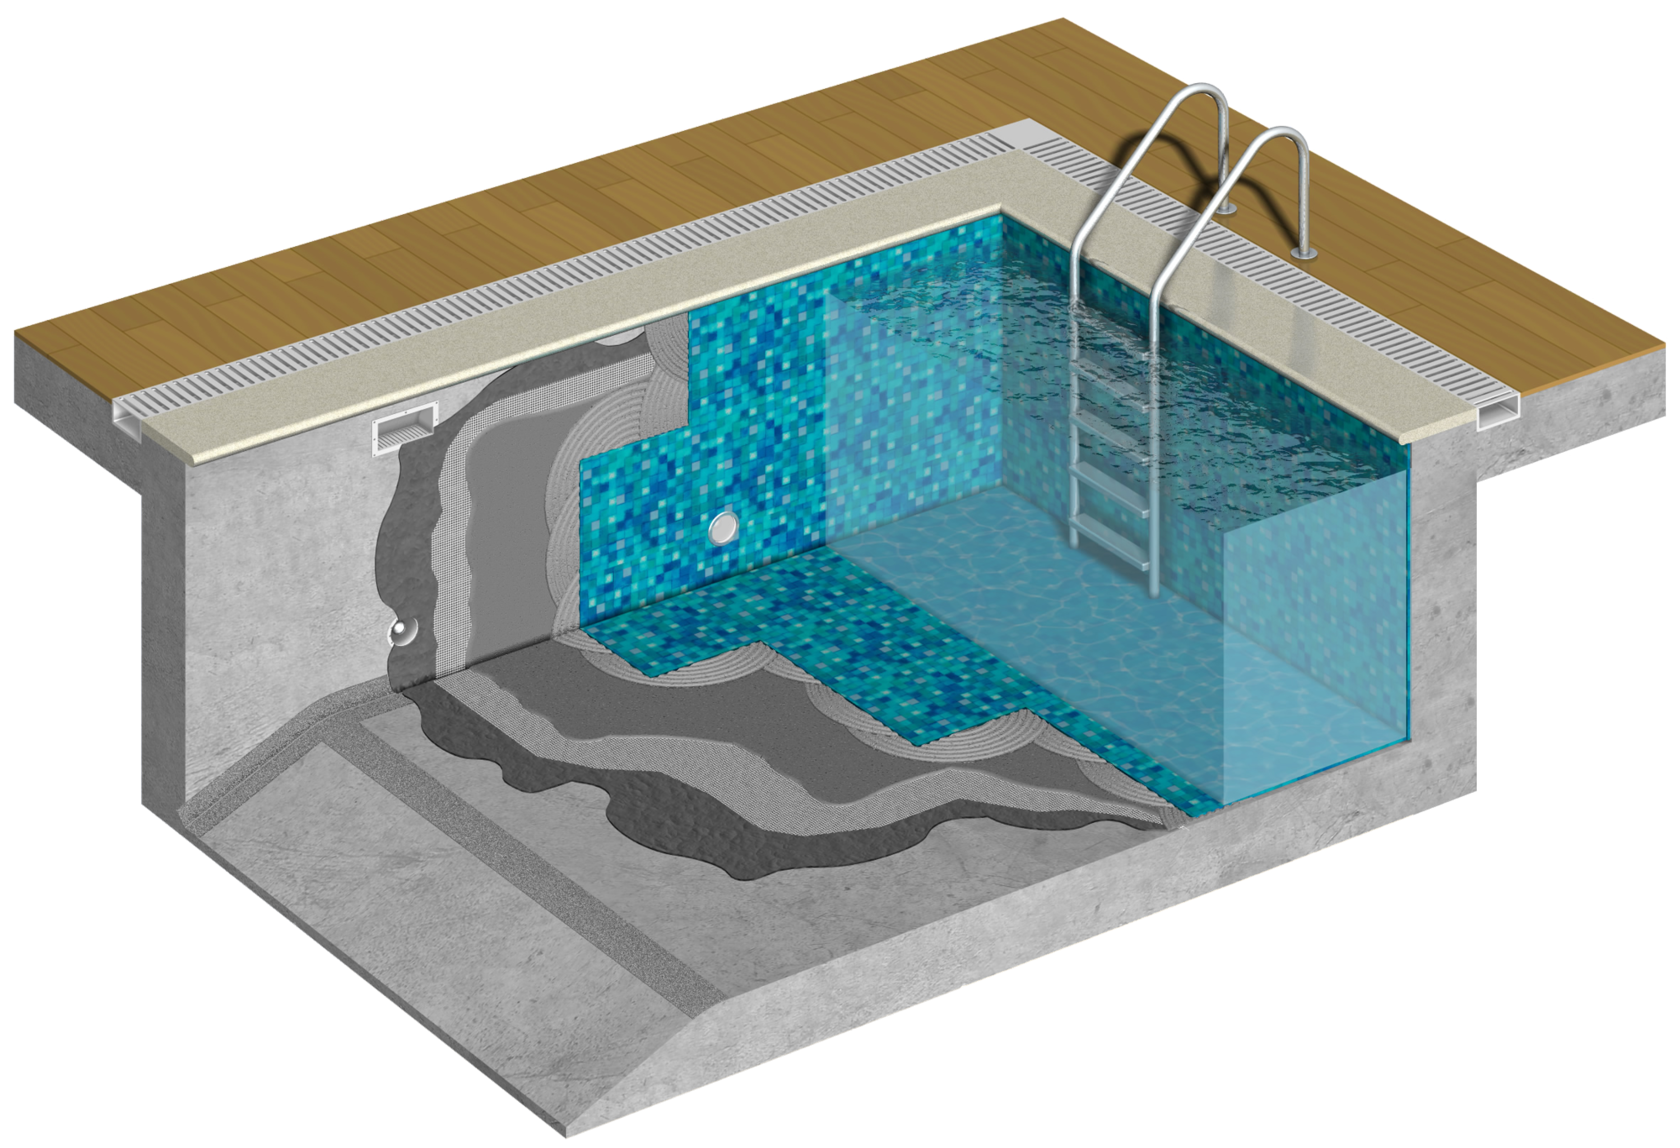 Строительство бетонного бассейна на даче: пошаговая инструкция + видео